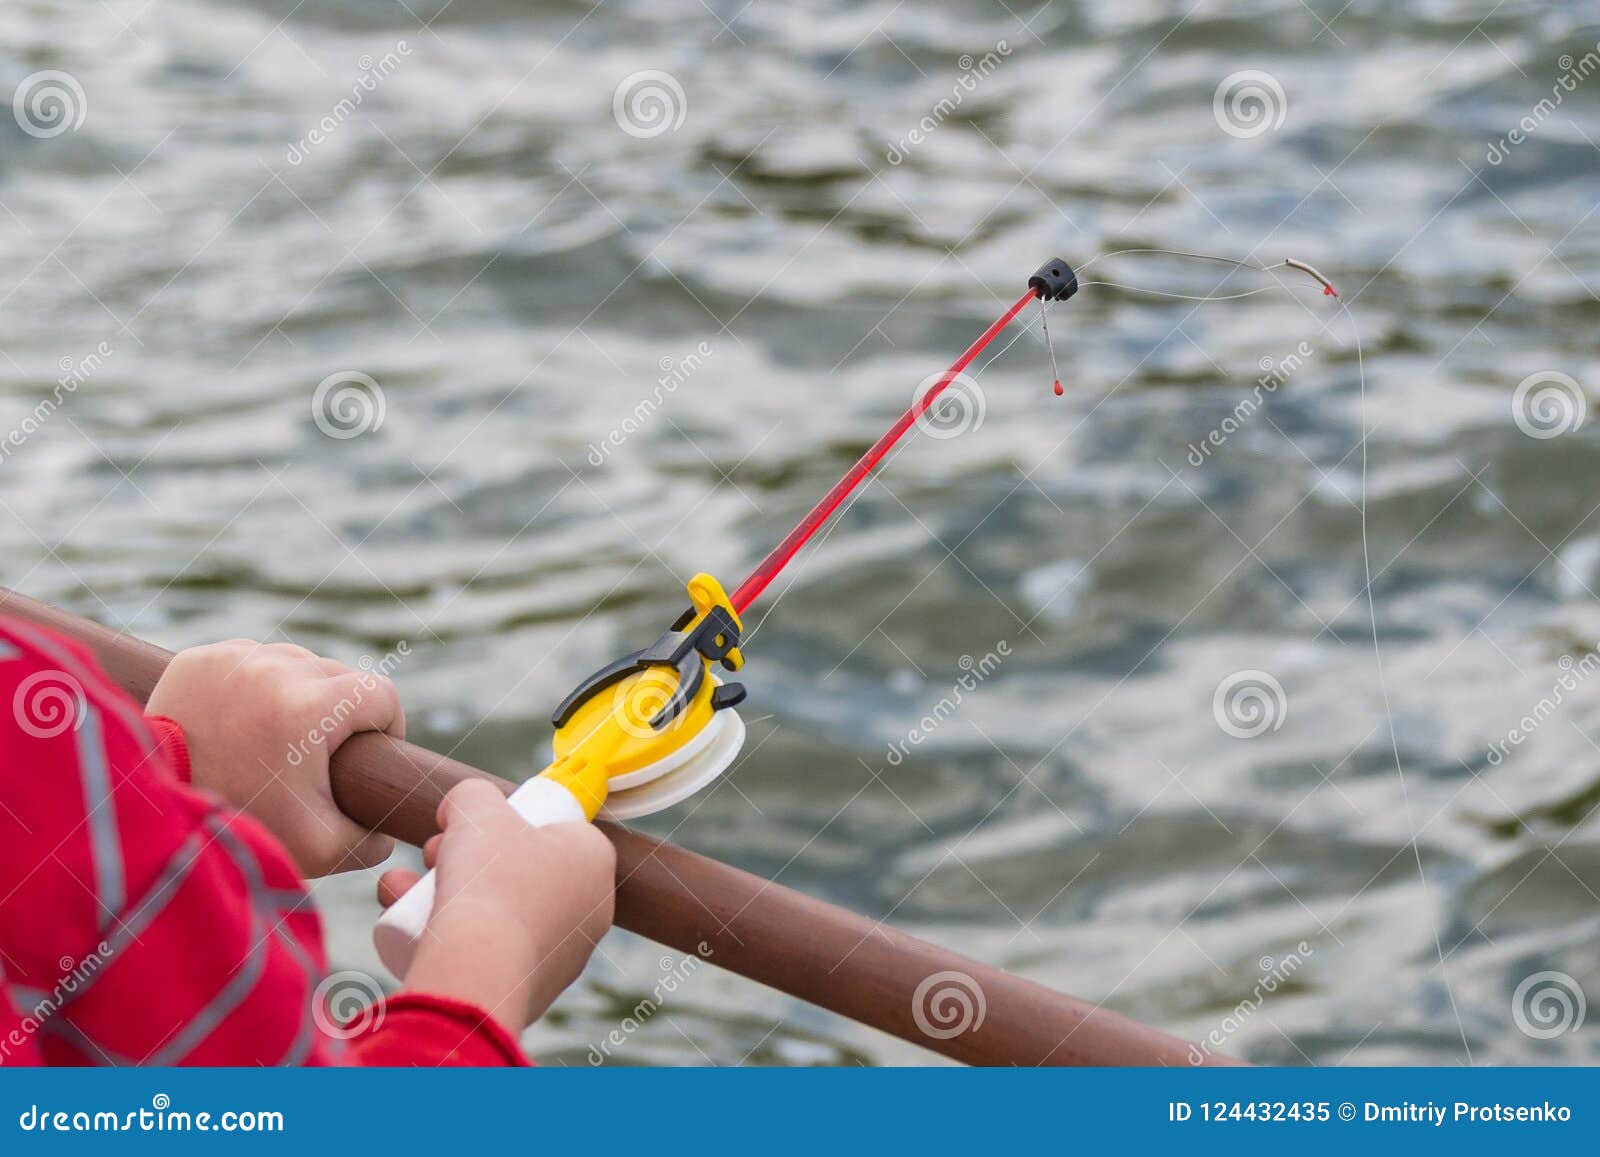 A Child`s Hand is Fishing on a Small Fishing Rod. Ozernaya Fishing